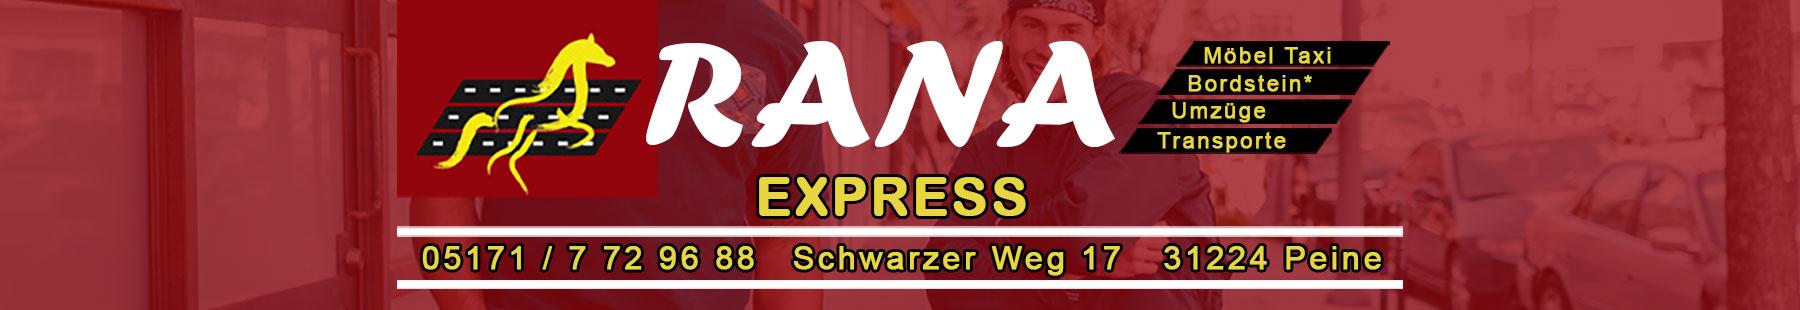 Rana-Express-Header